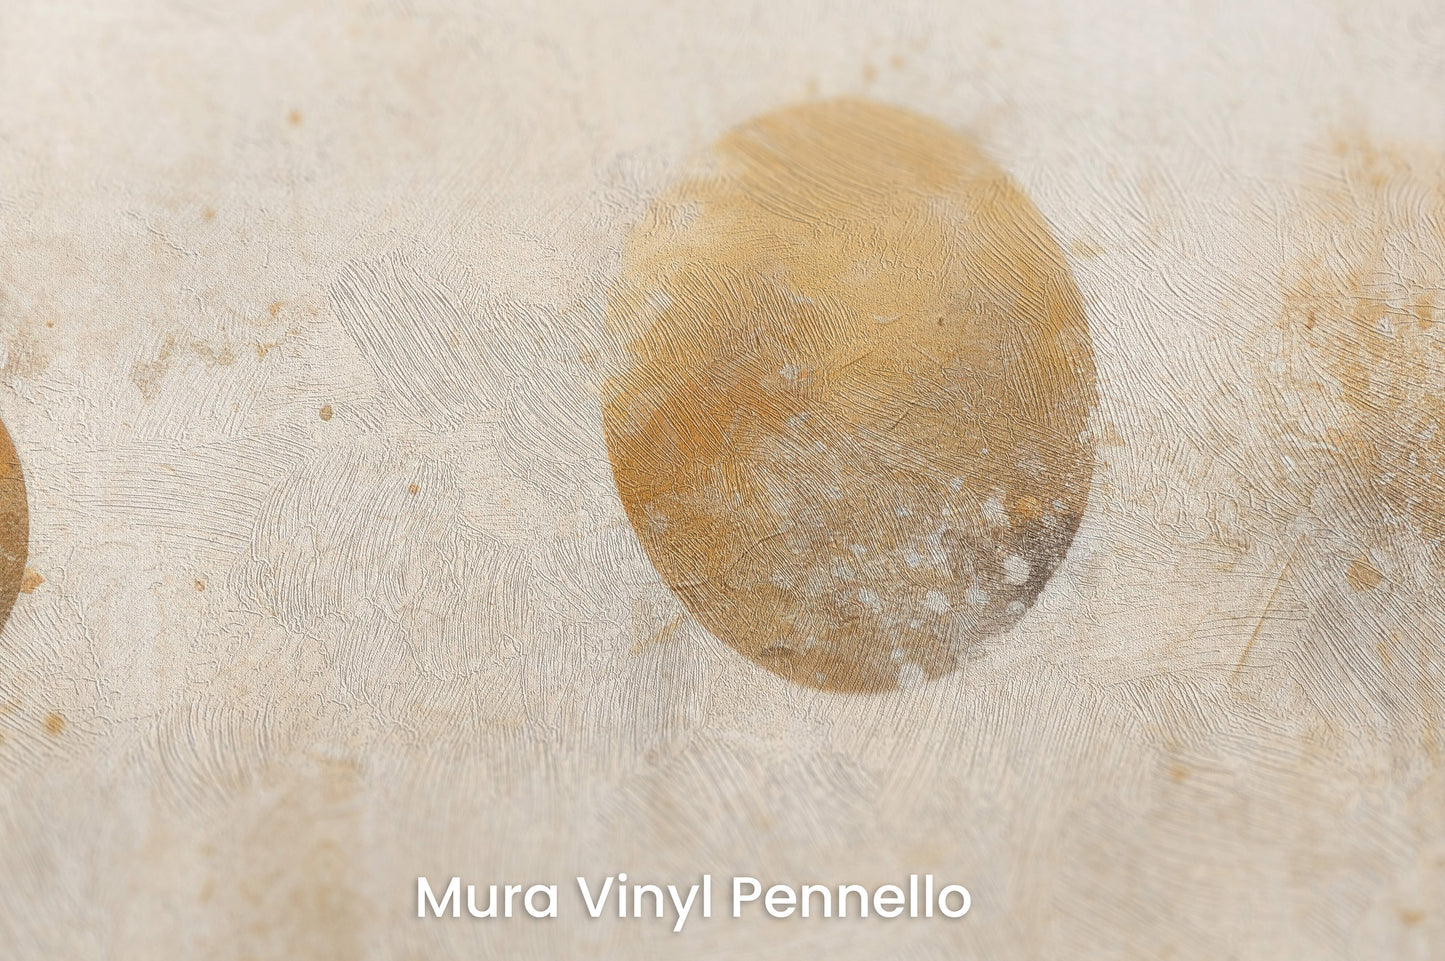 Zbliżenie na artystyczną fototapetę o nazwie AURUM DUST ECLIPSE na podłożu Mura Vinyl Pennello - faktura pociągnięć pędzla malarskiego.